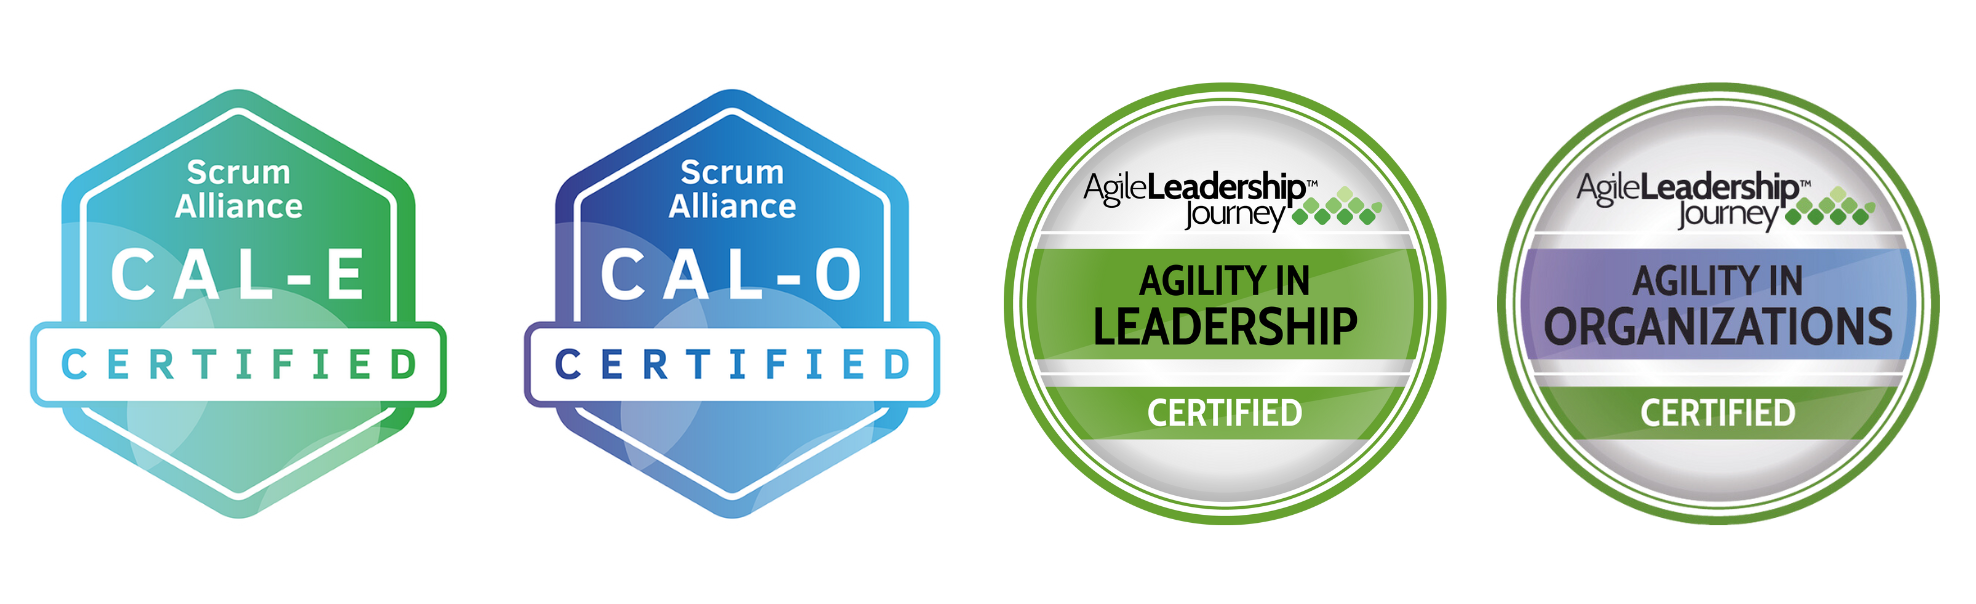 CAL-E, CAL-O, Agile Leadership badges